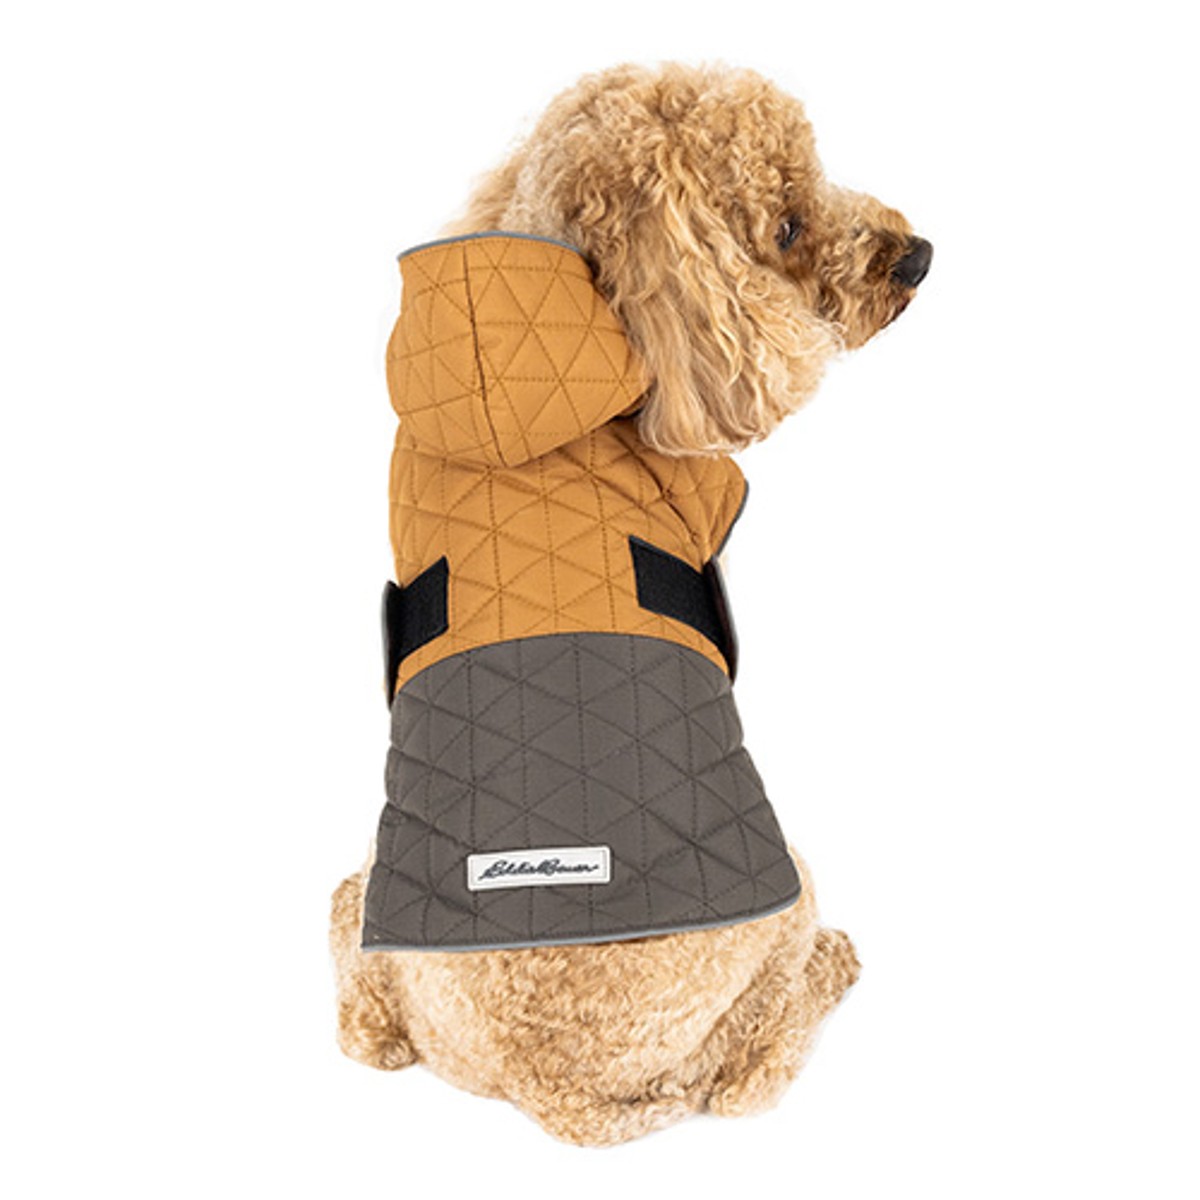 Eddie Bauer Richland Hooded Dog Jacket - Brown/Gray